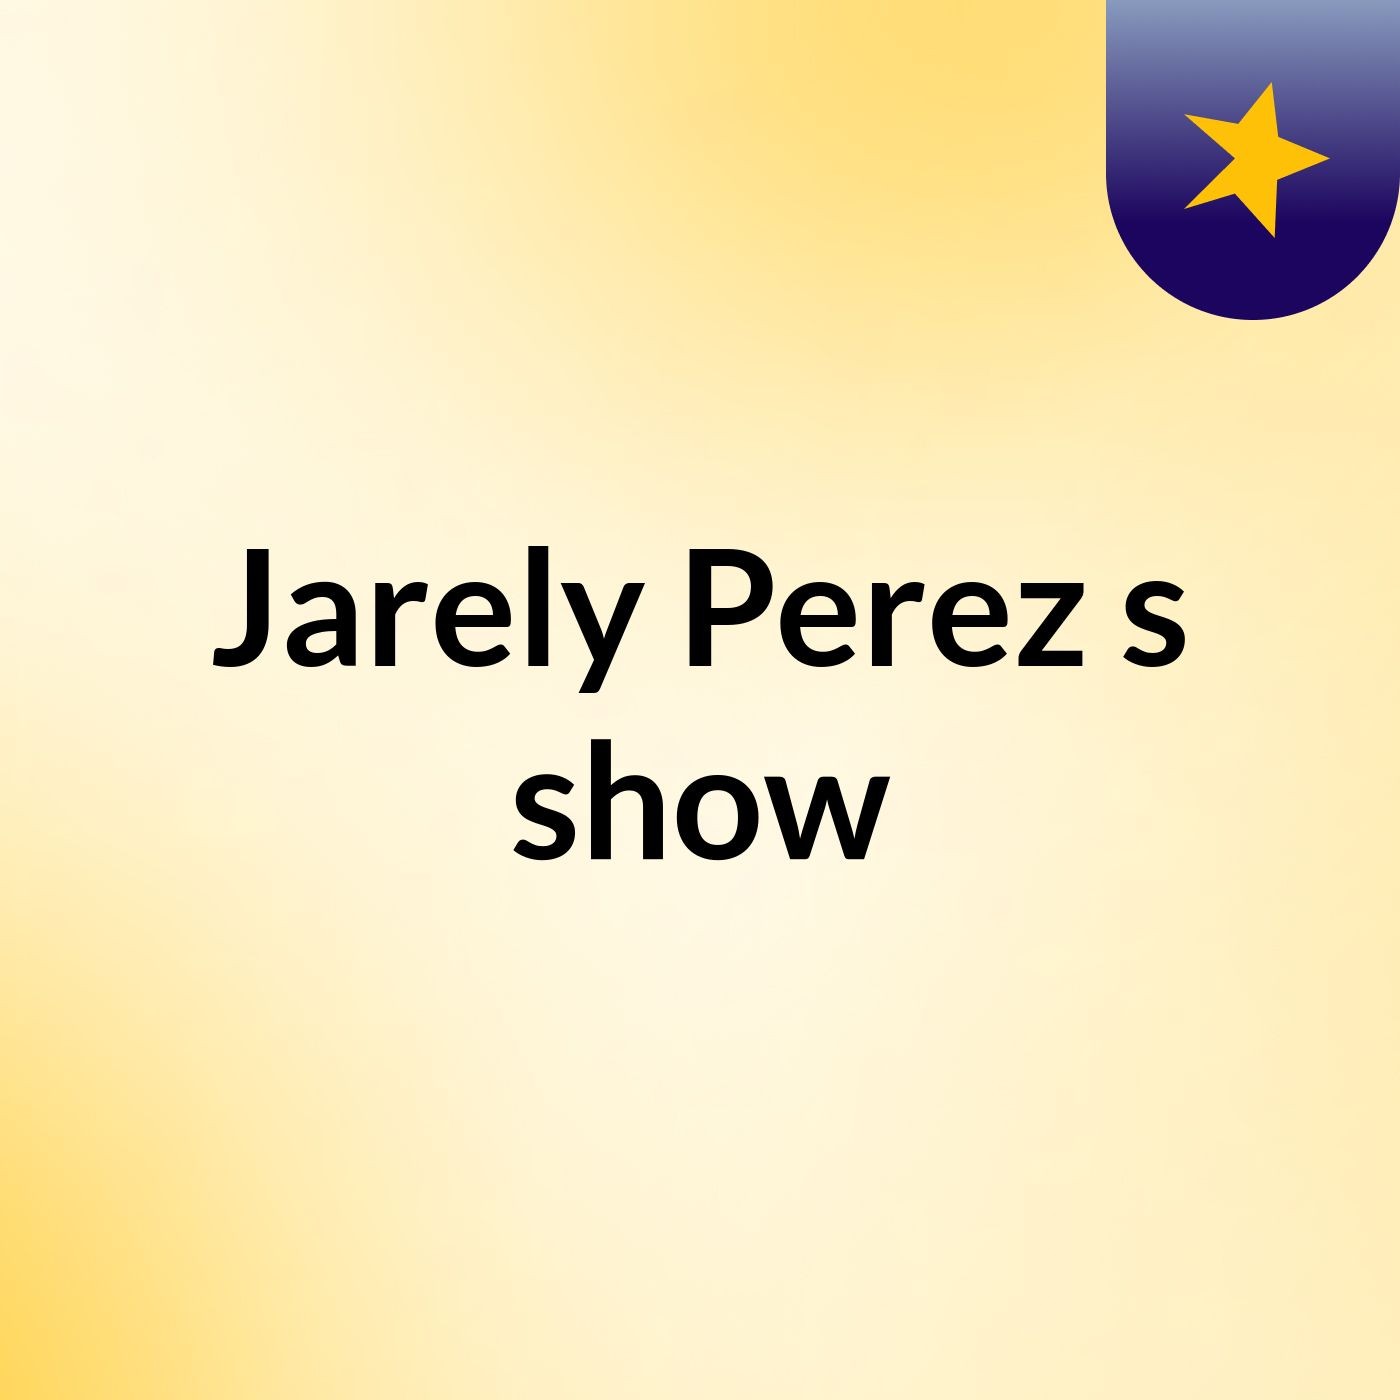 Jarely Perez's show